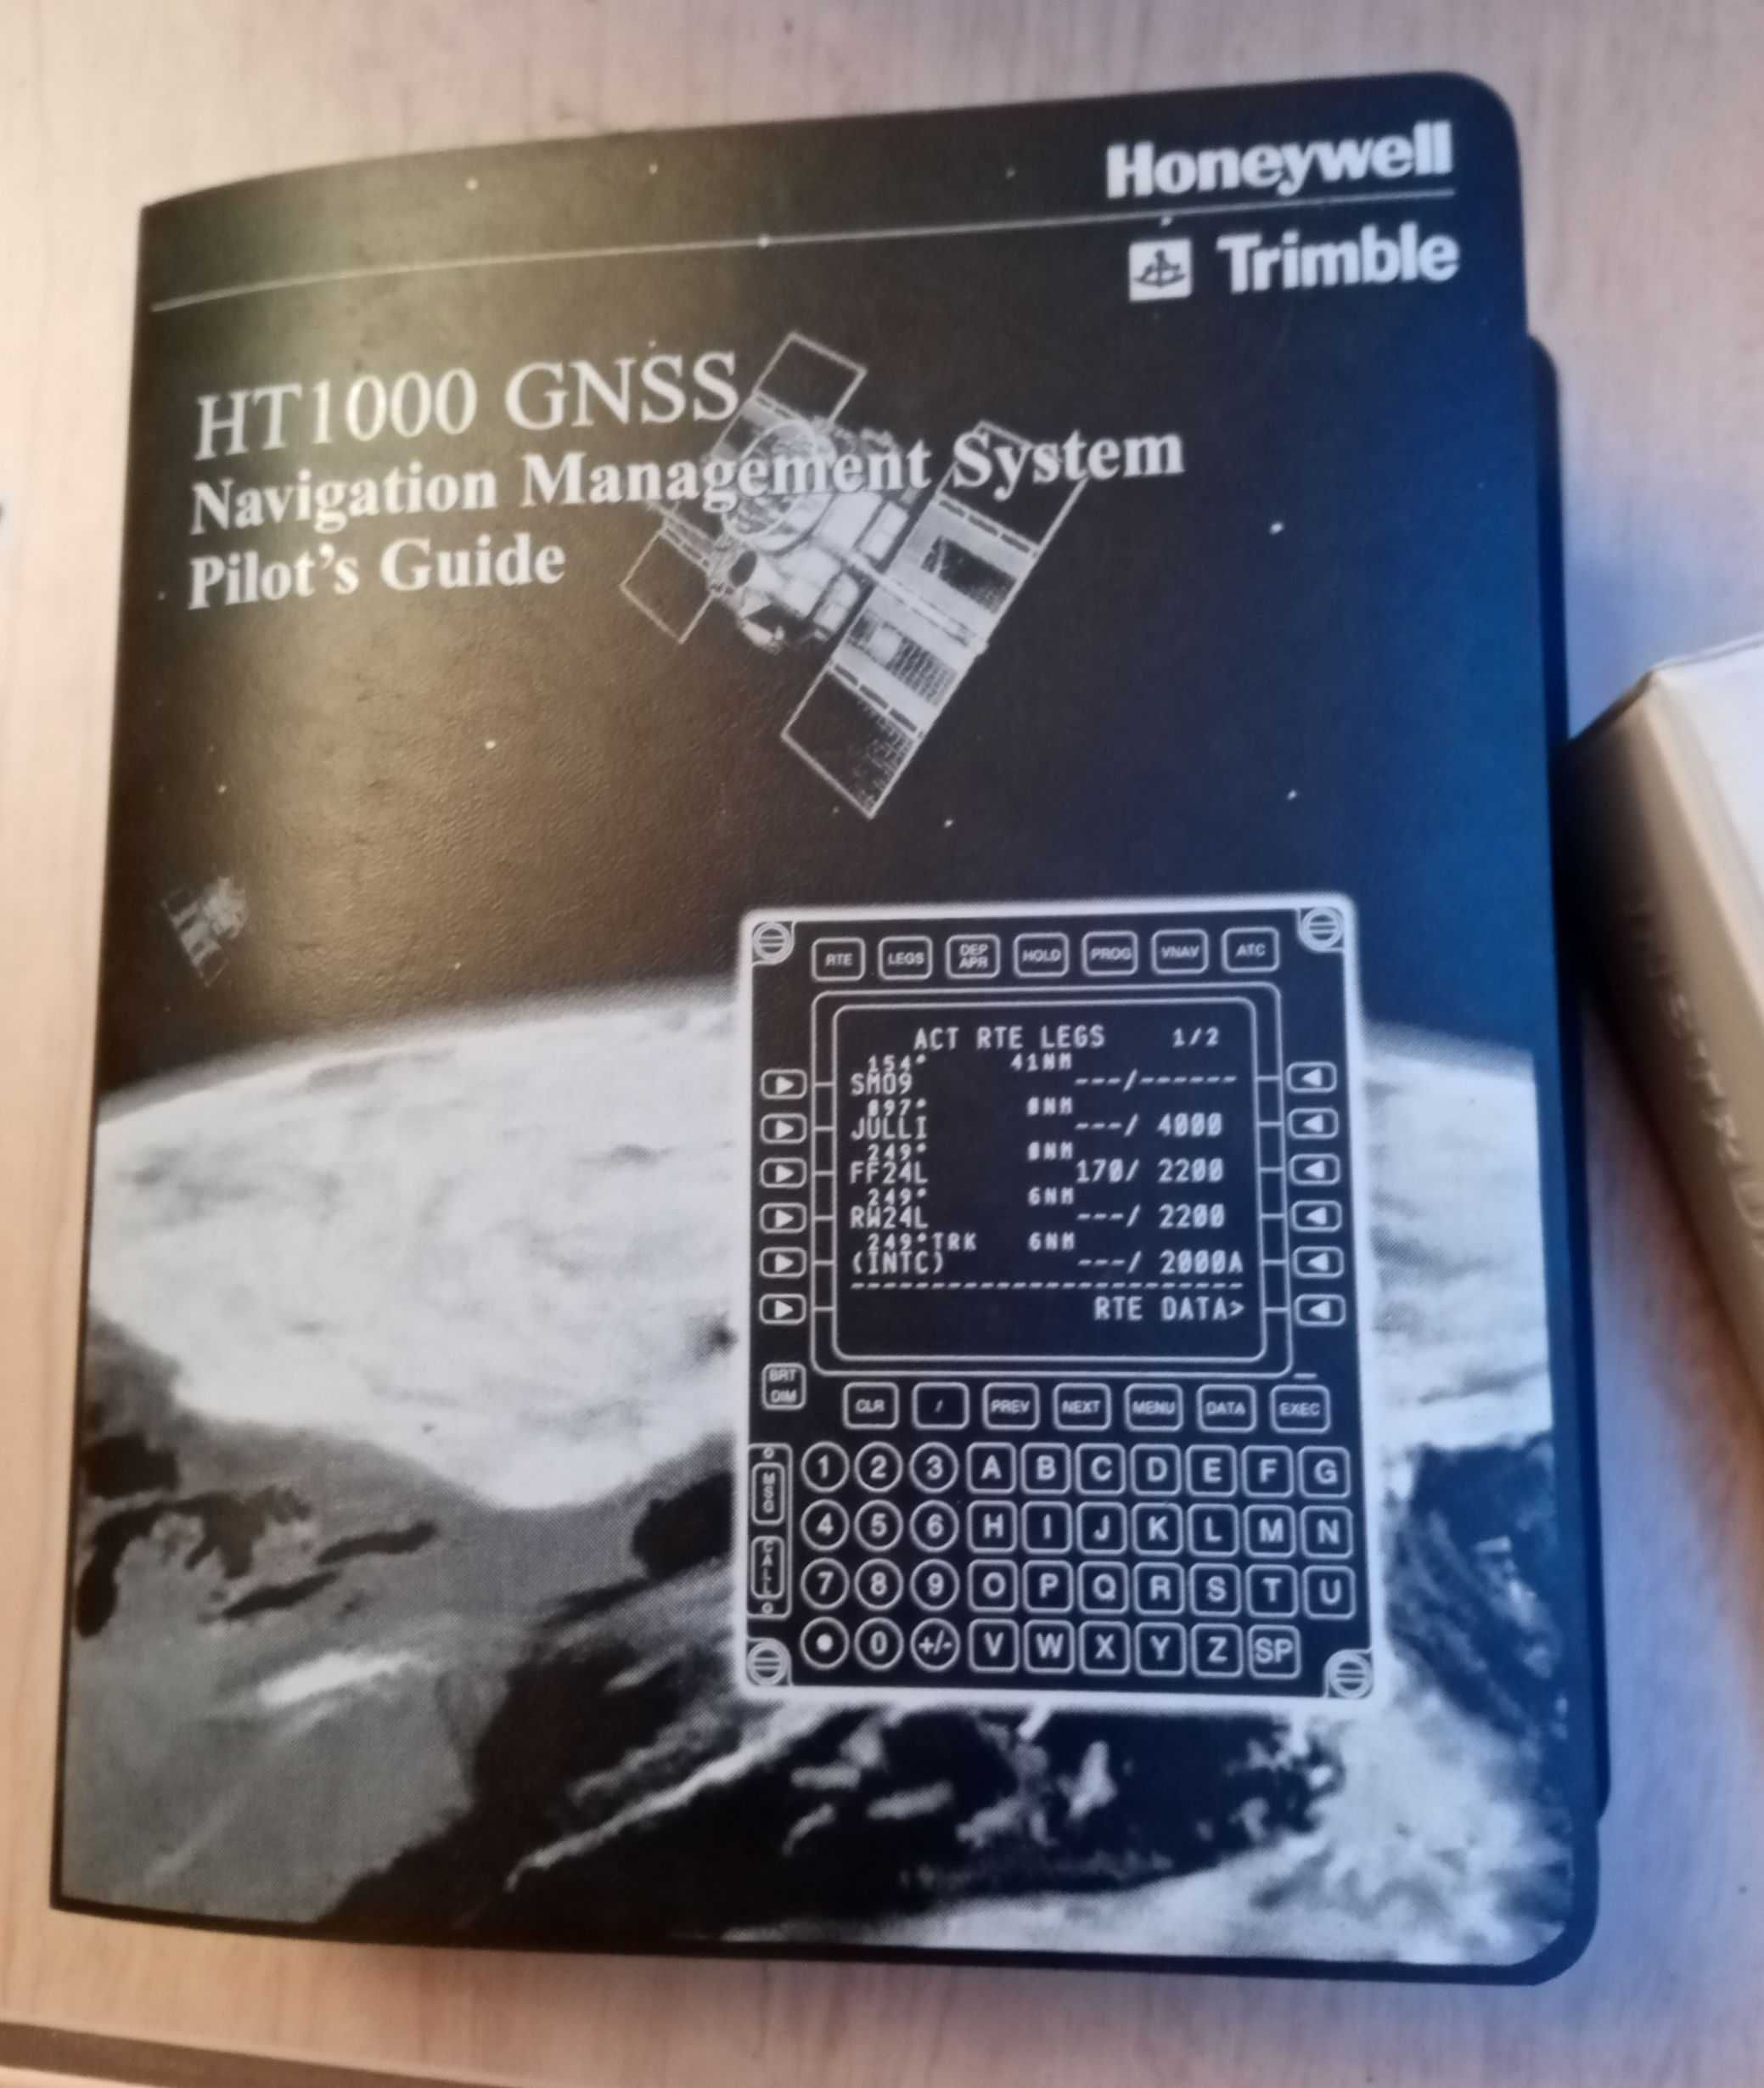 HT1000 GNSS - Navigation Management System Pilot's Guide - podręcznik